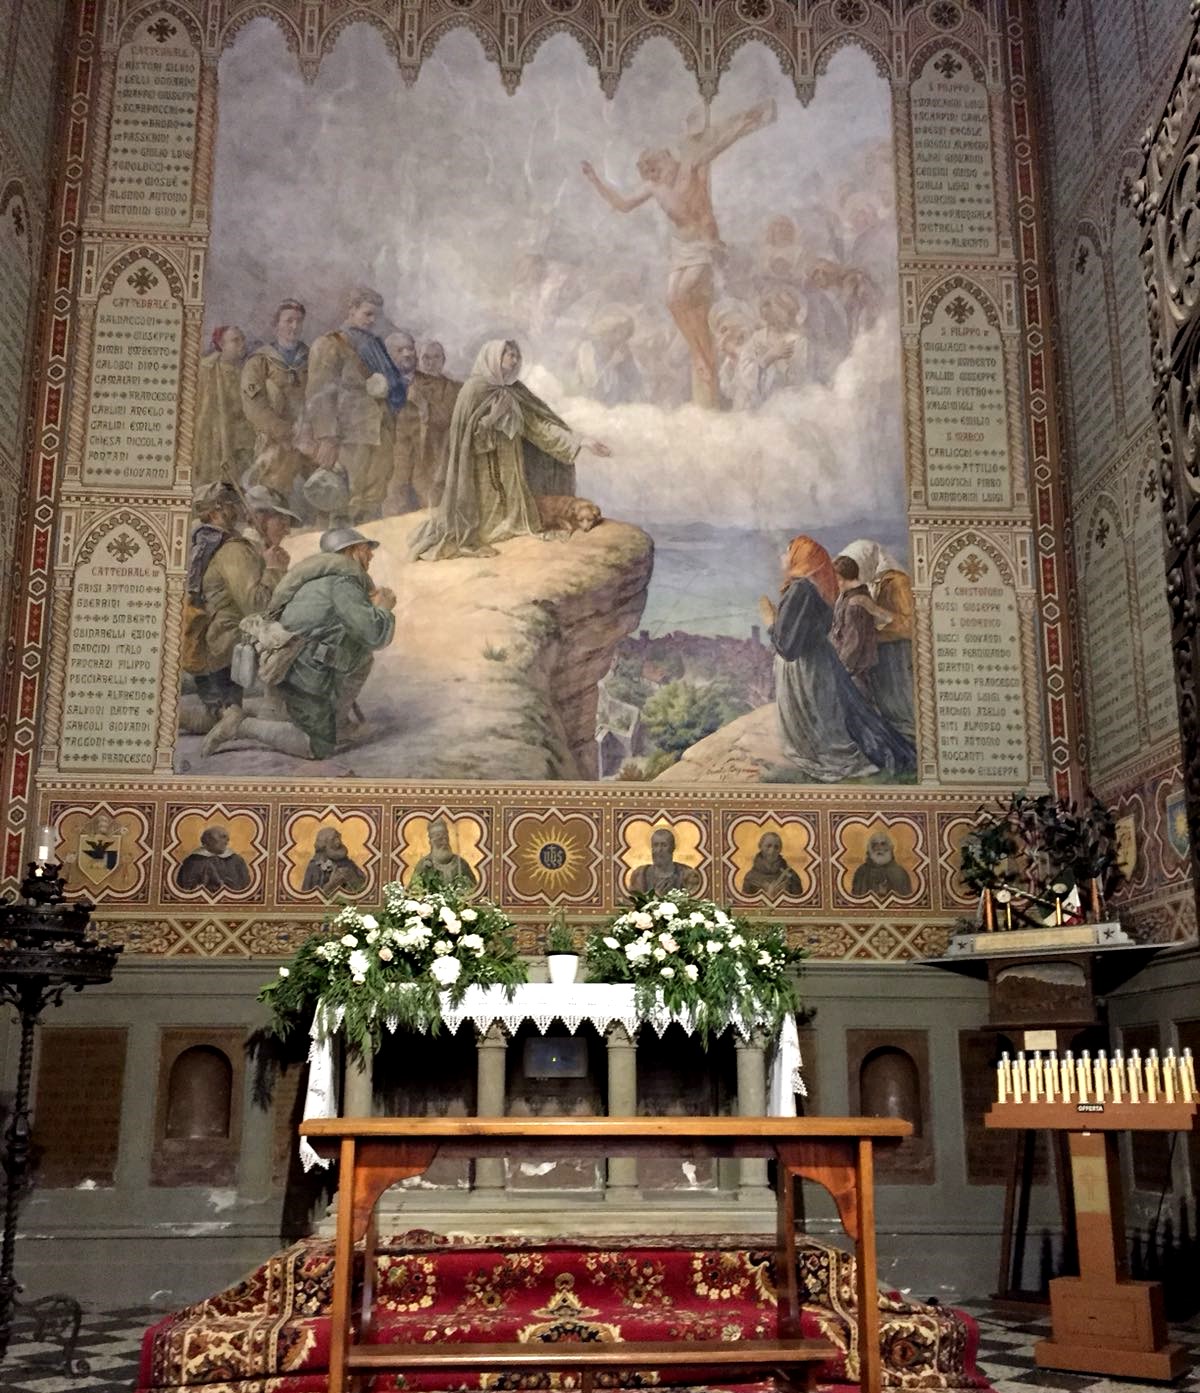 Cappella Santuario S. Margherita